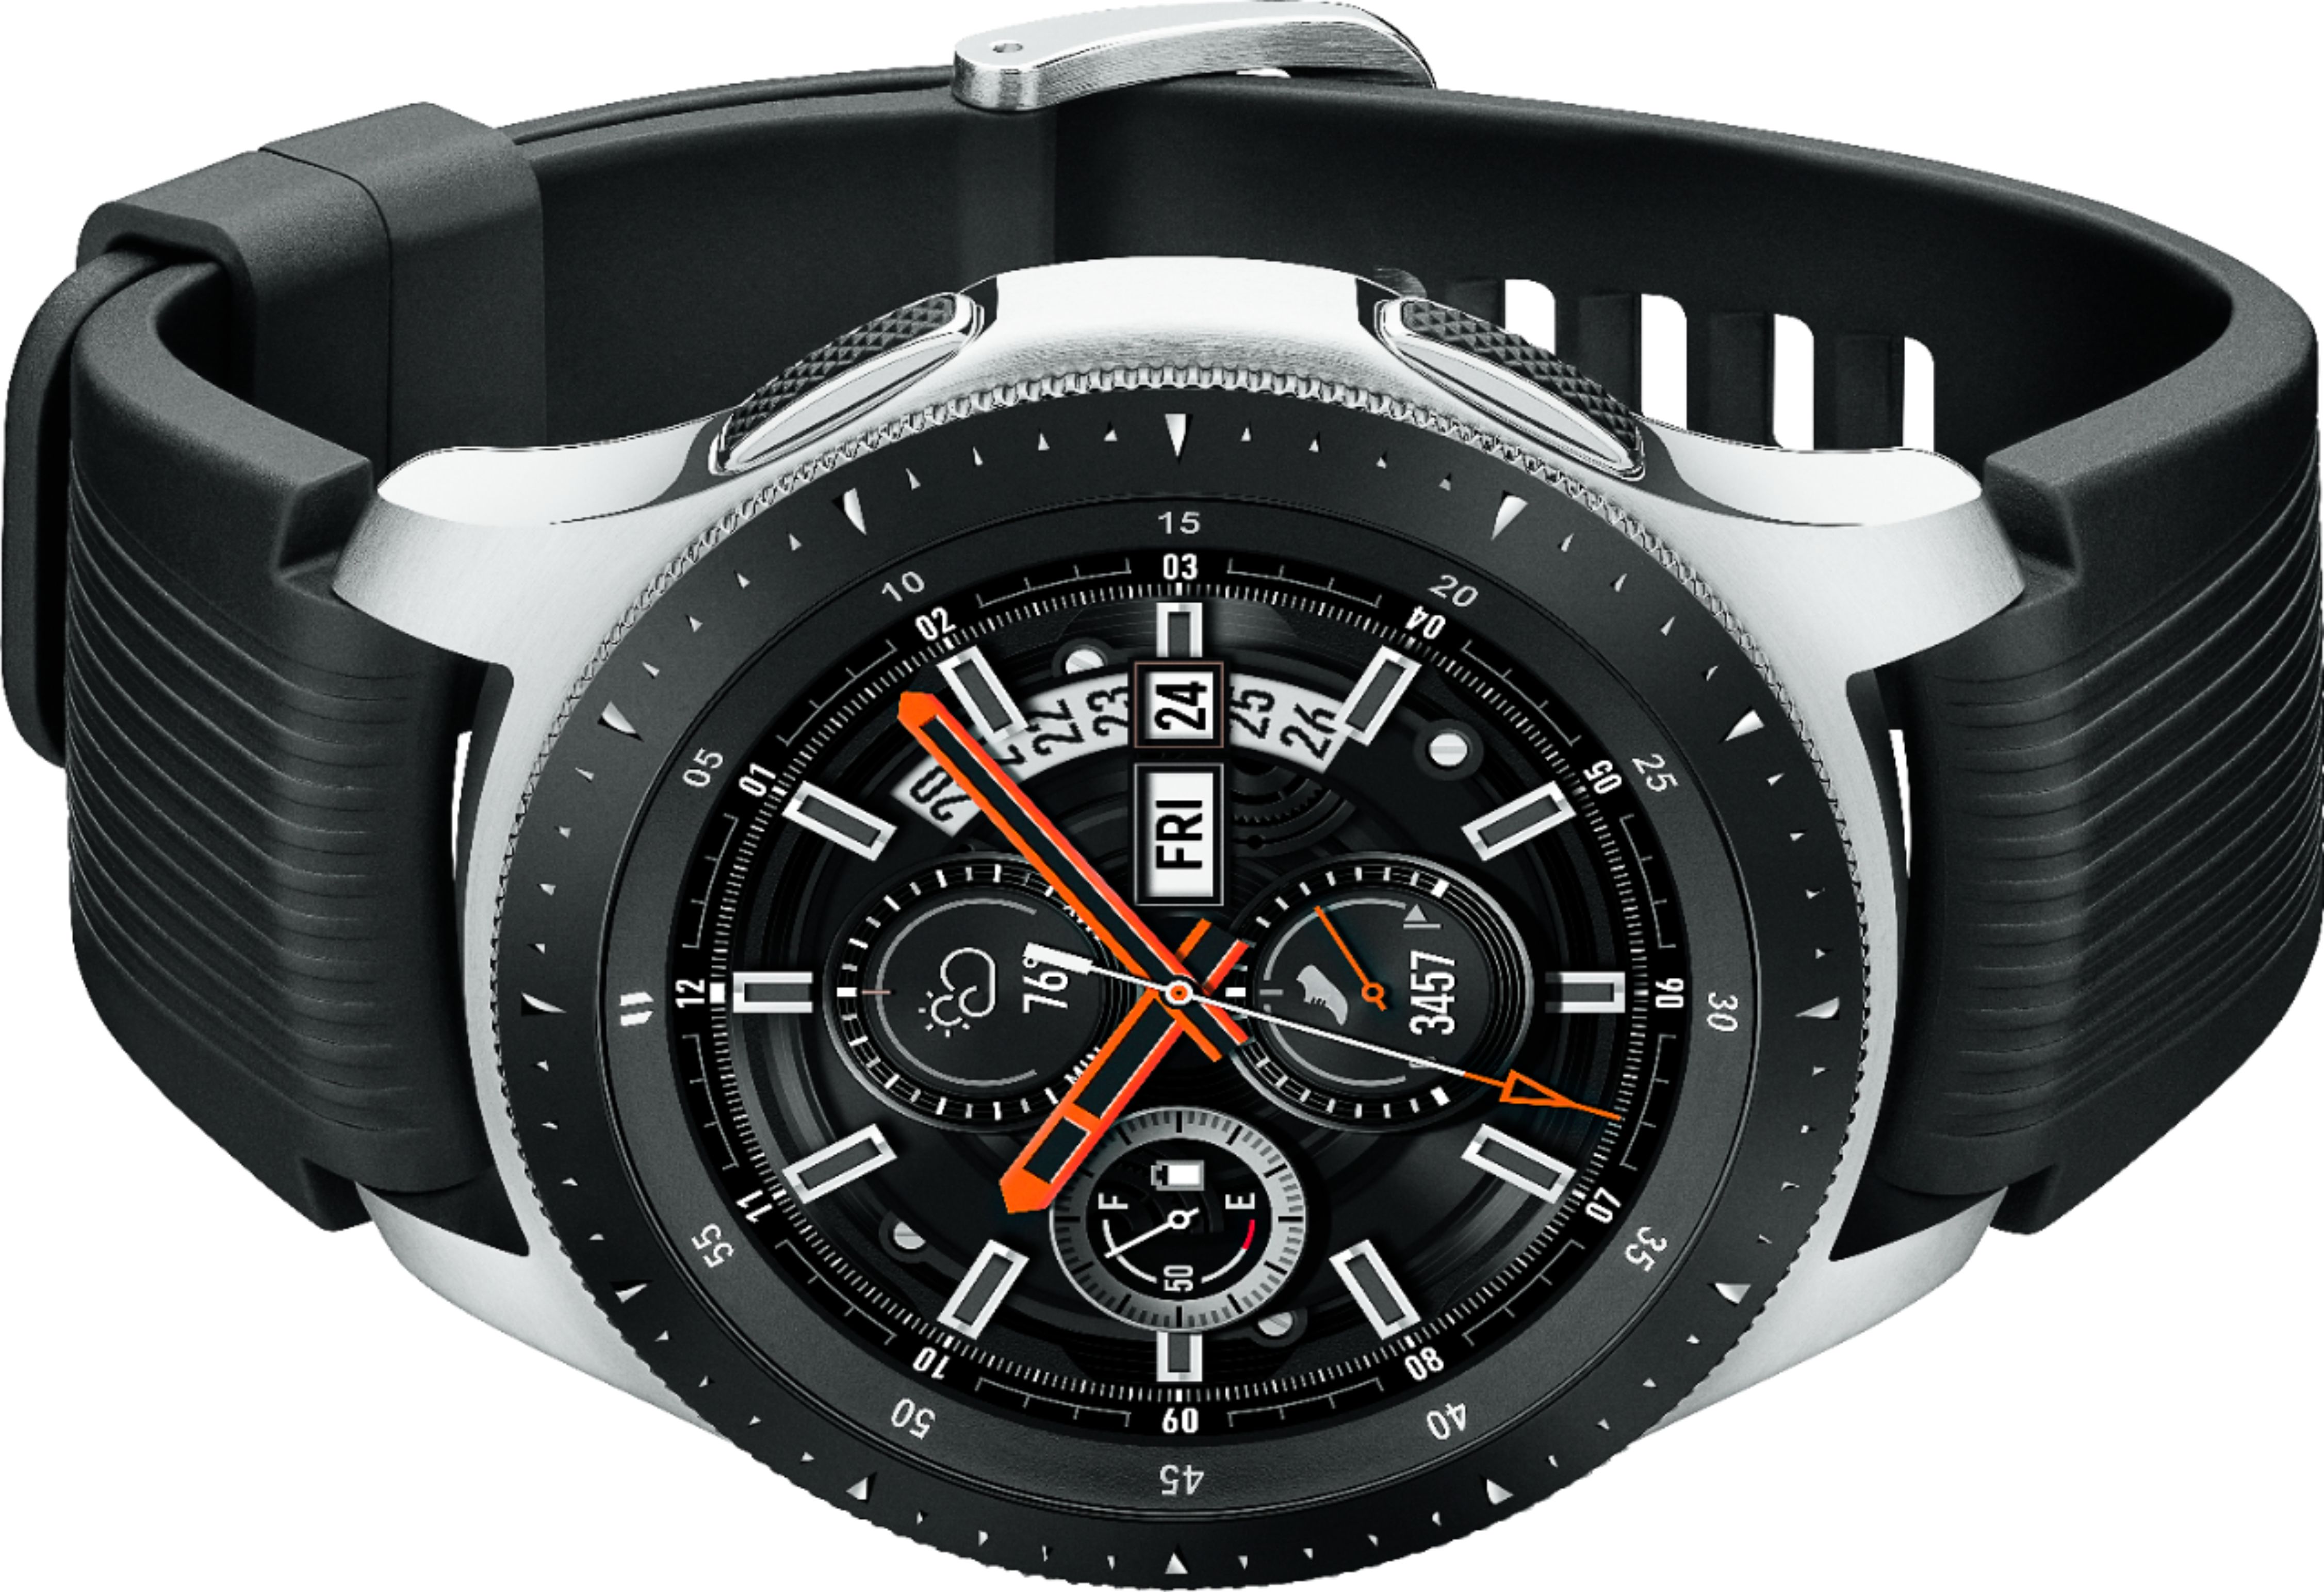 Samsung Galaxy Watch Smartwatch 46mm Stainless Steel LTE (unlocked